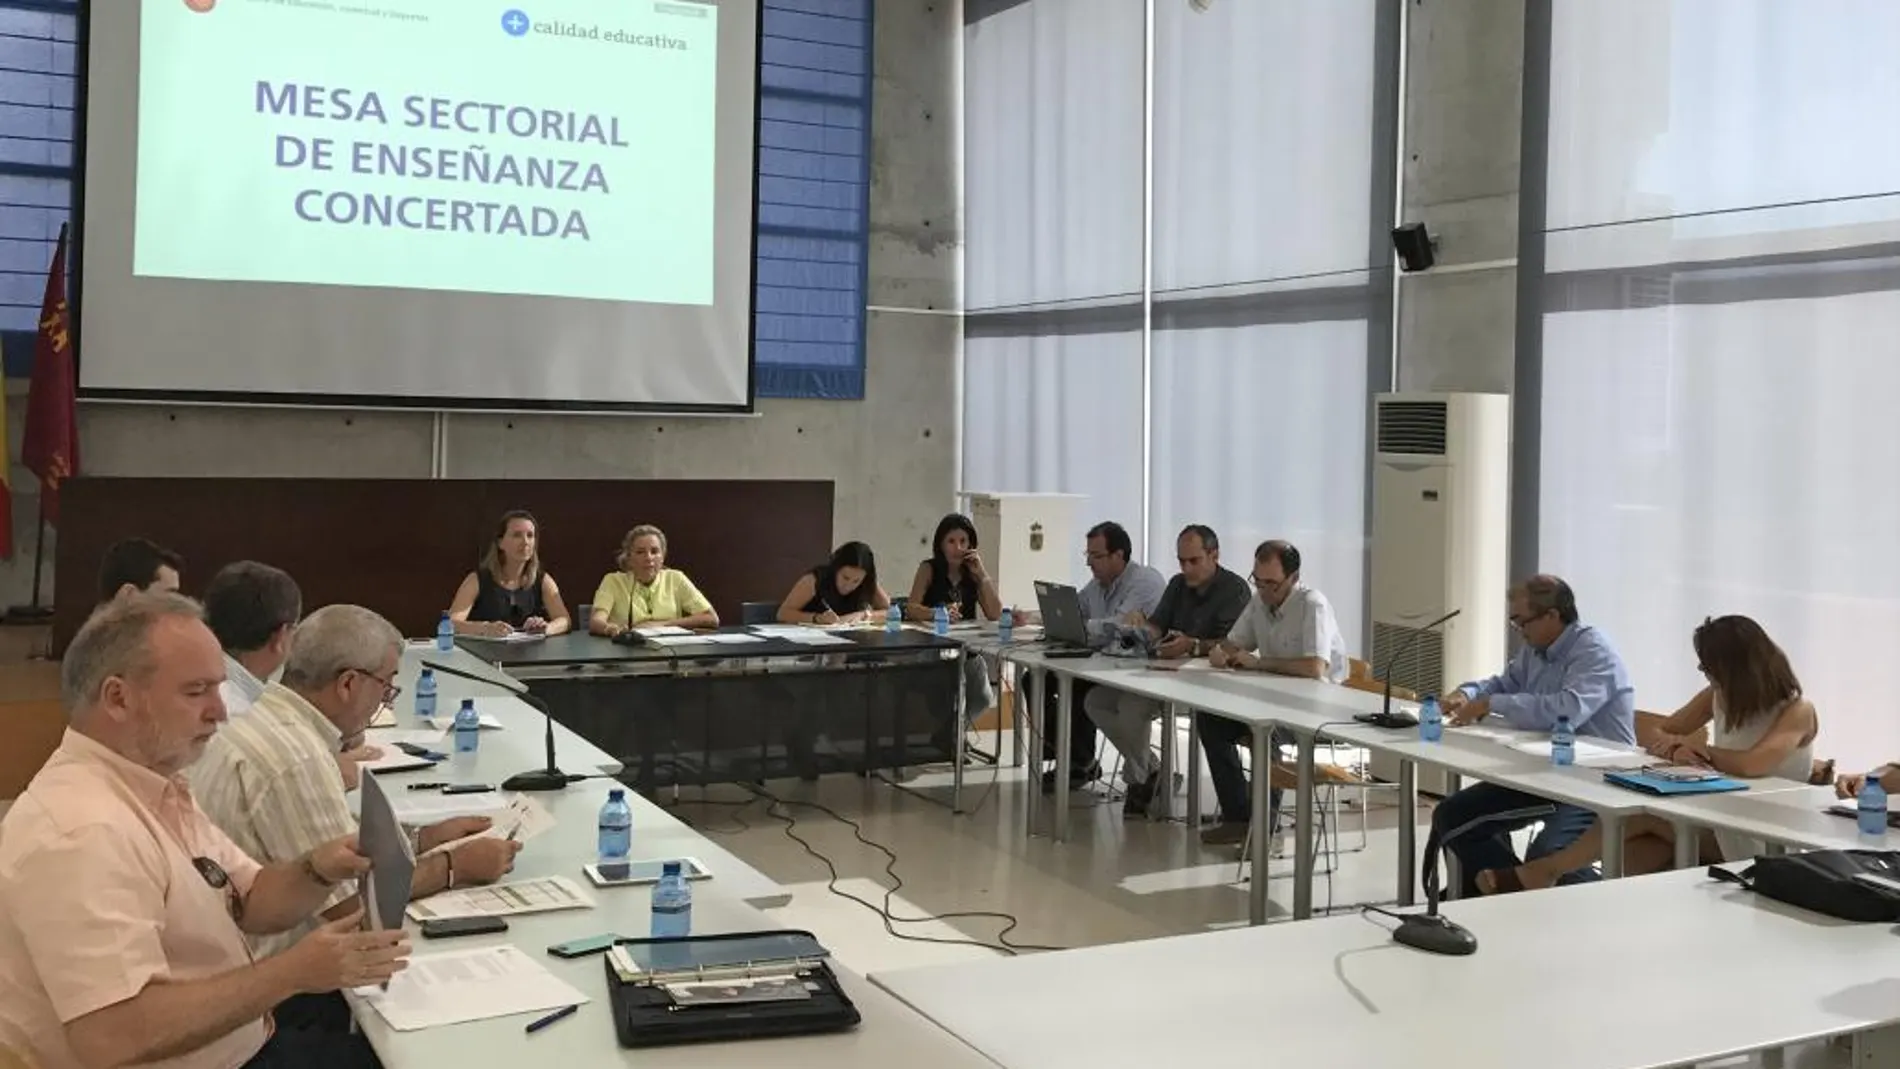 La consejera de Educación, Adela Martínez-Cachá, preside la Mesa Sectorial de Enseñanza Concertada